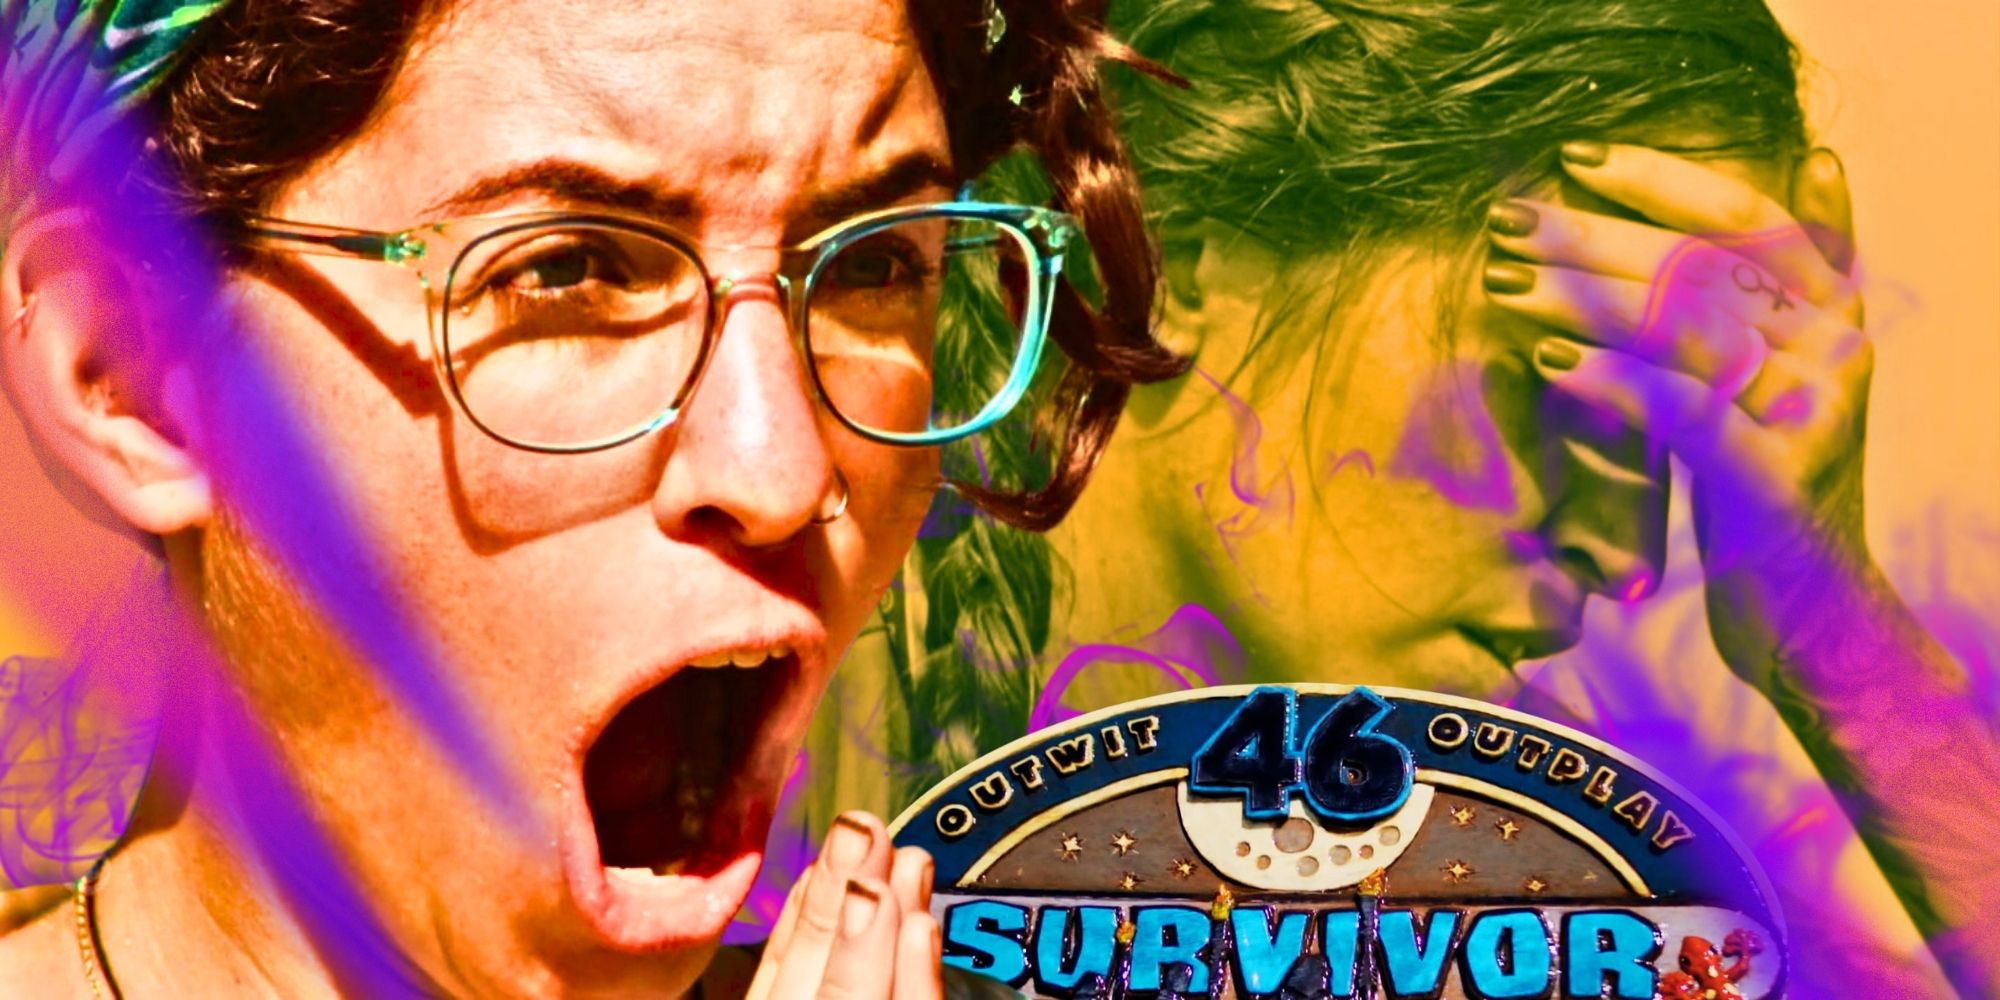  Survivor 46 promo image